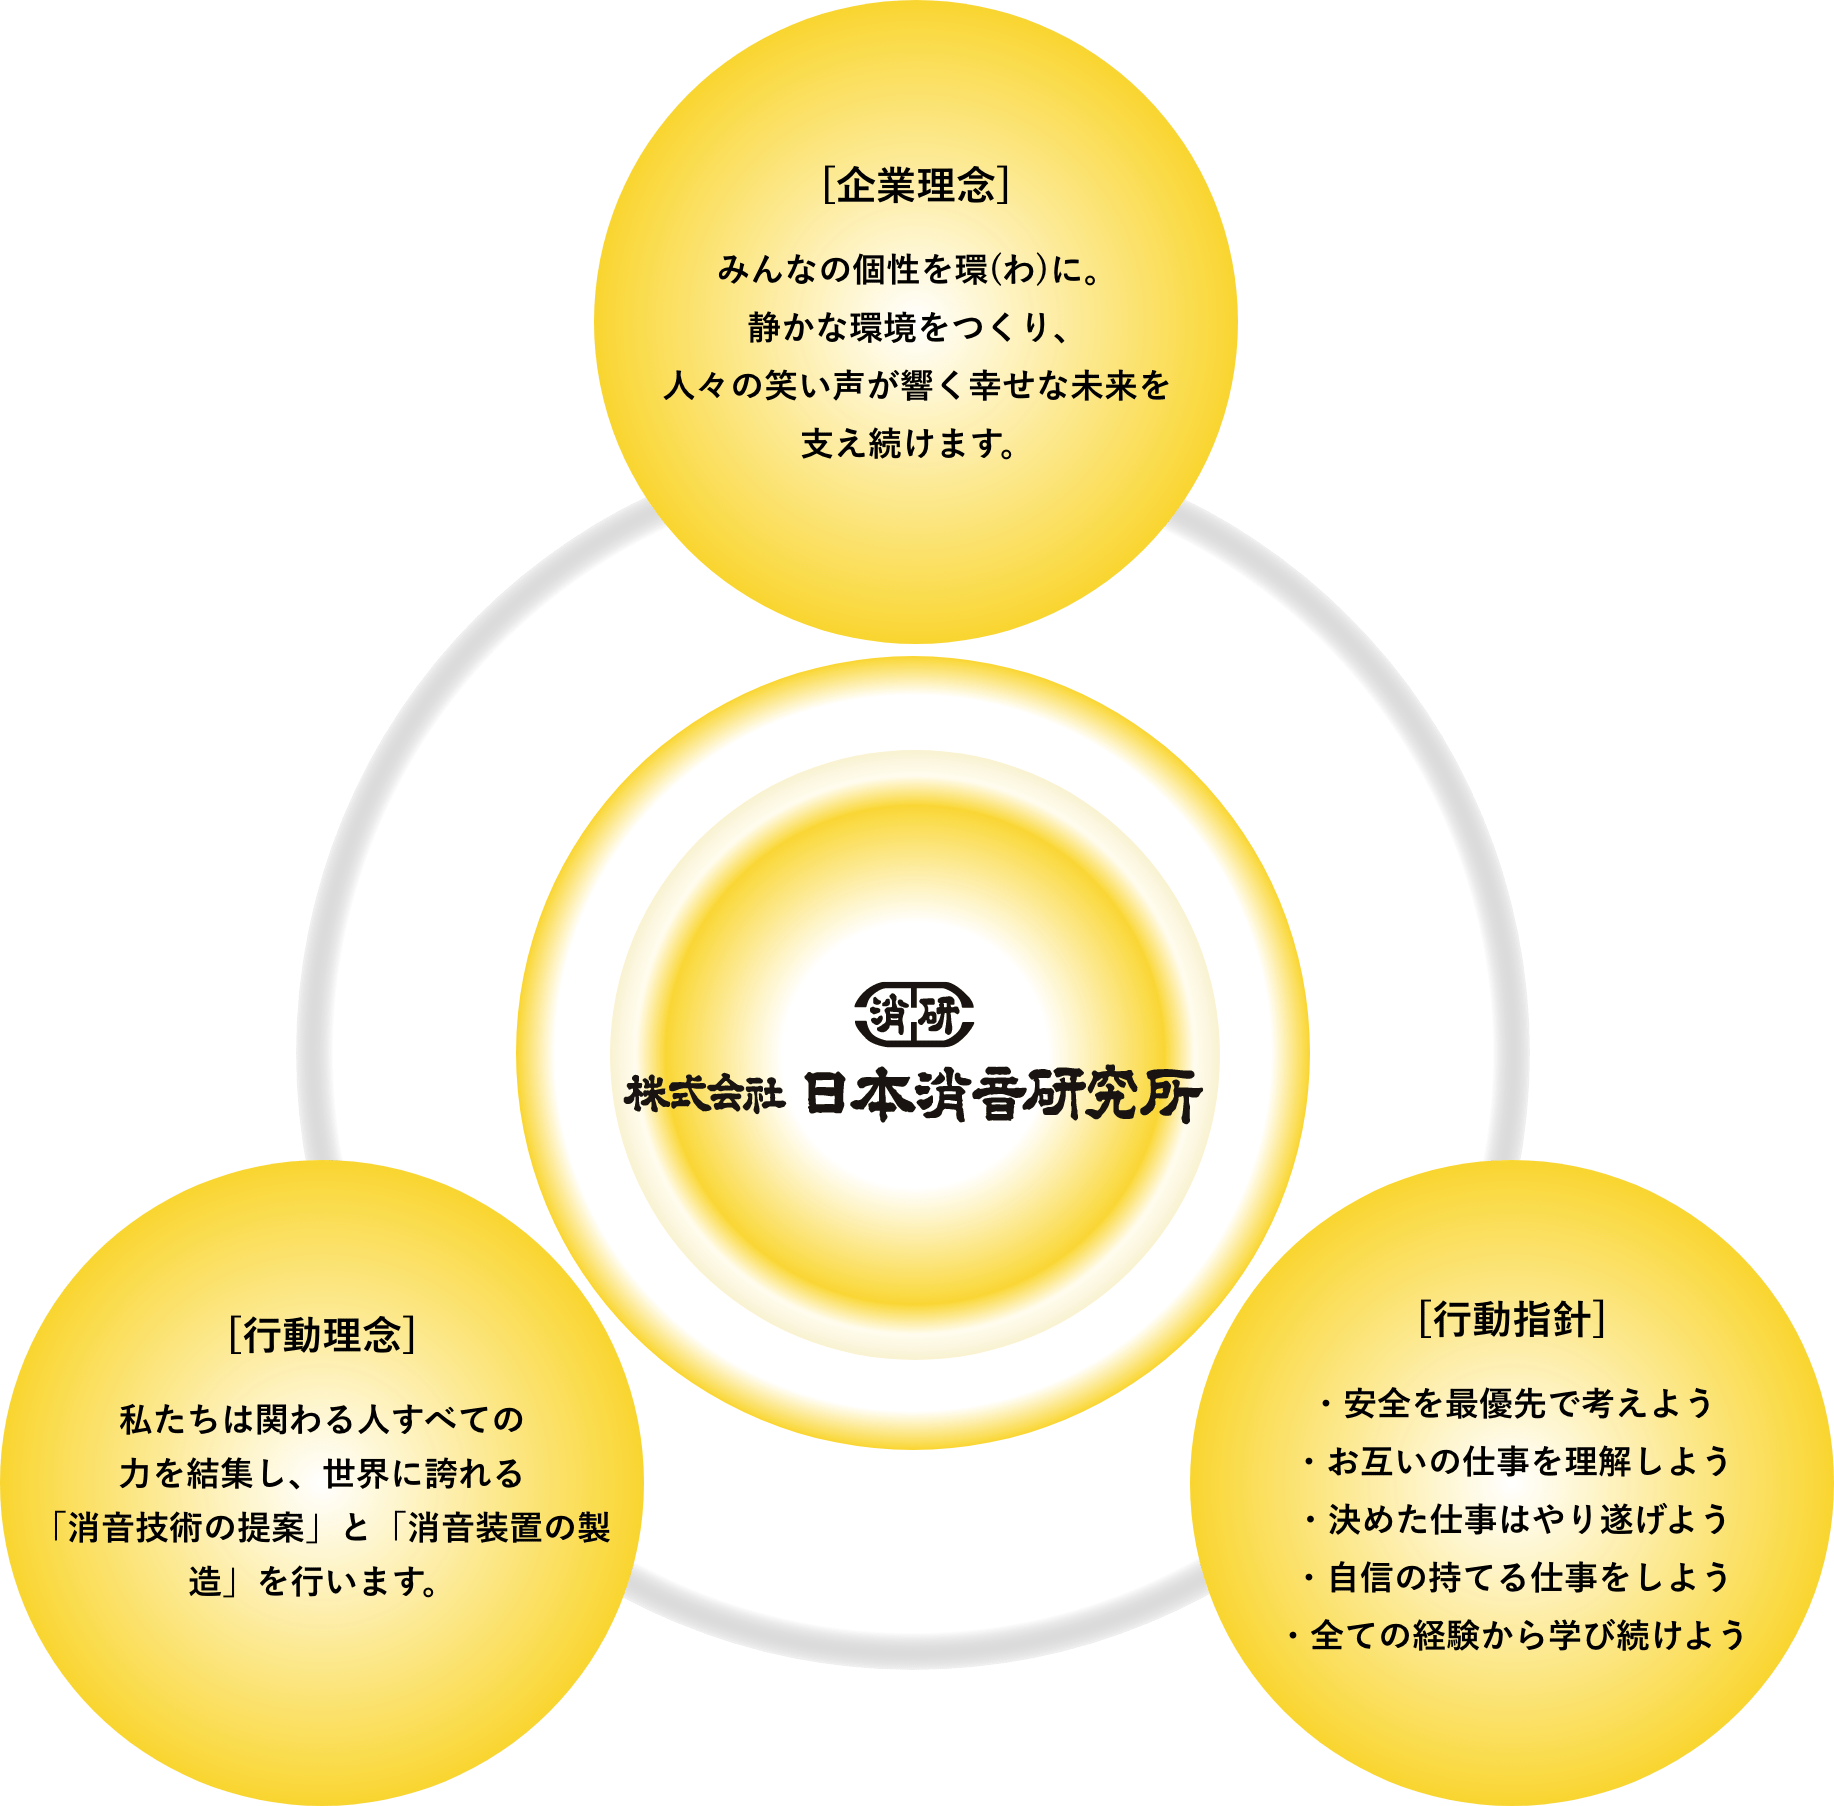 日本消音研究所の企業理念